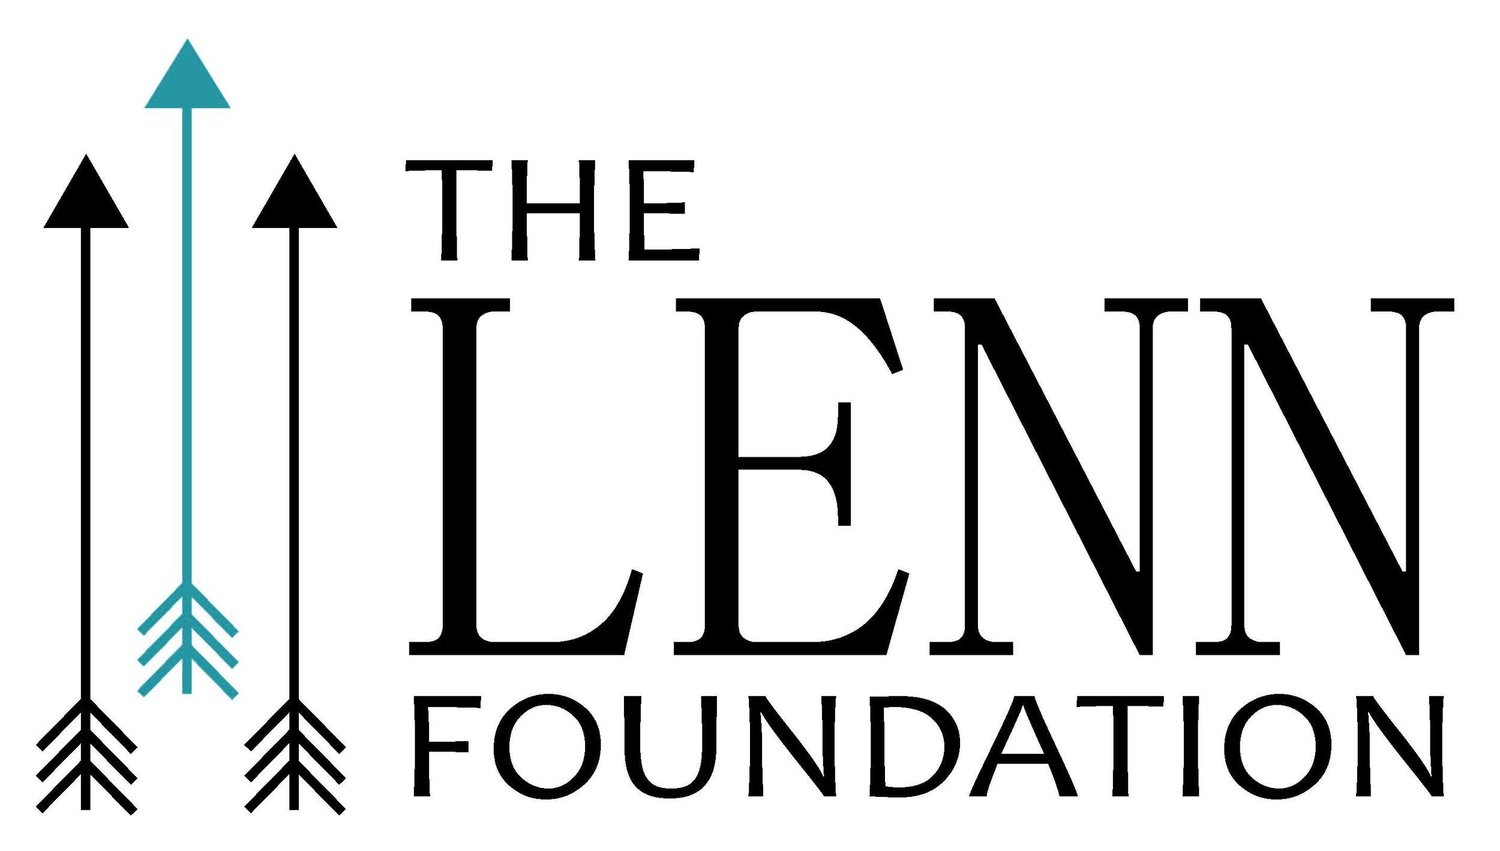 The LENN Foundation